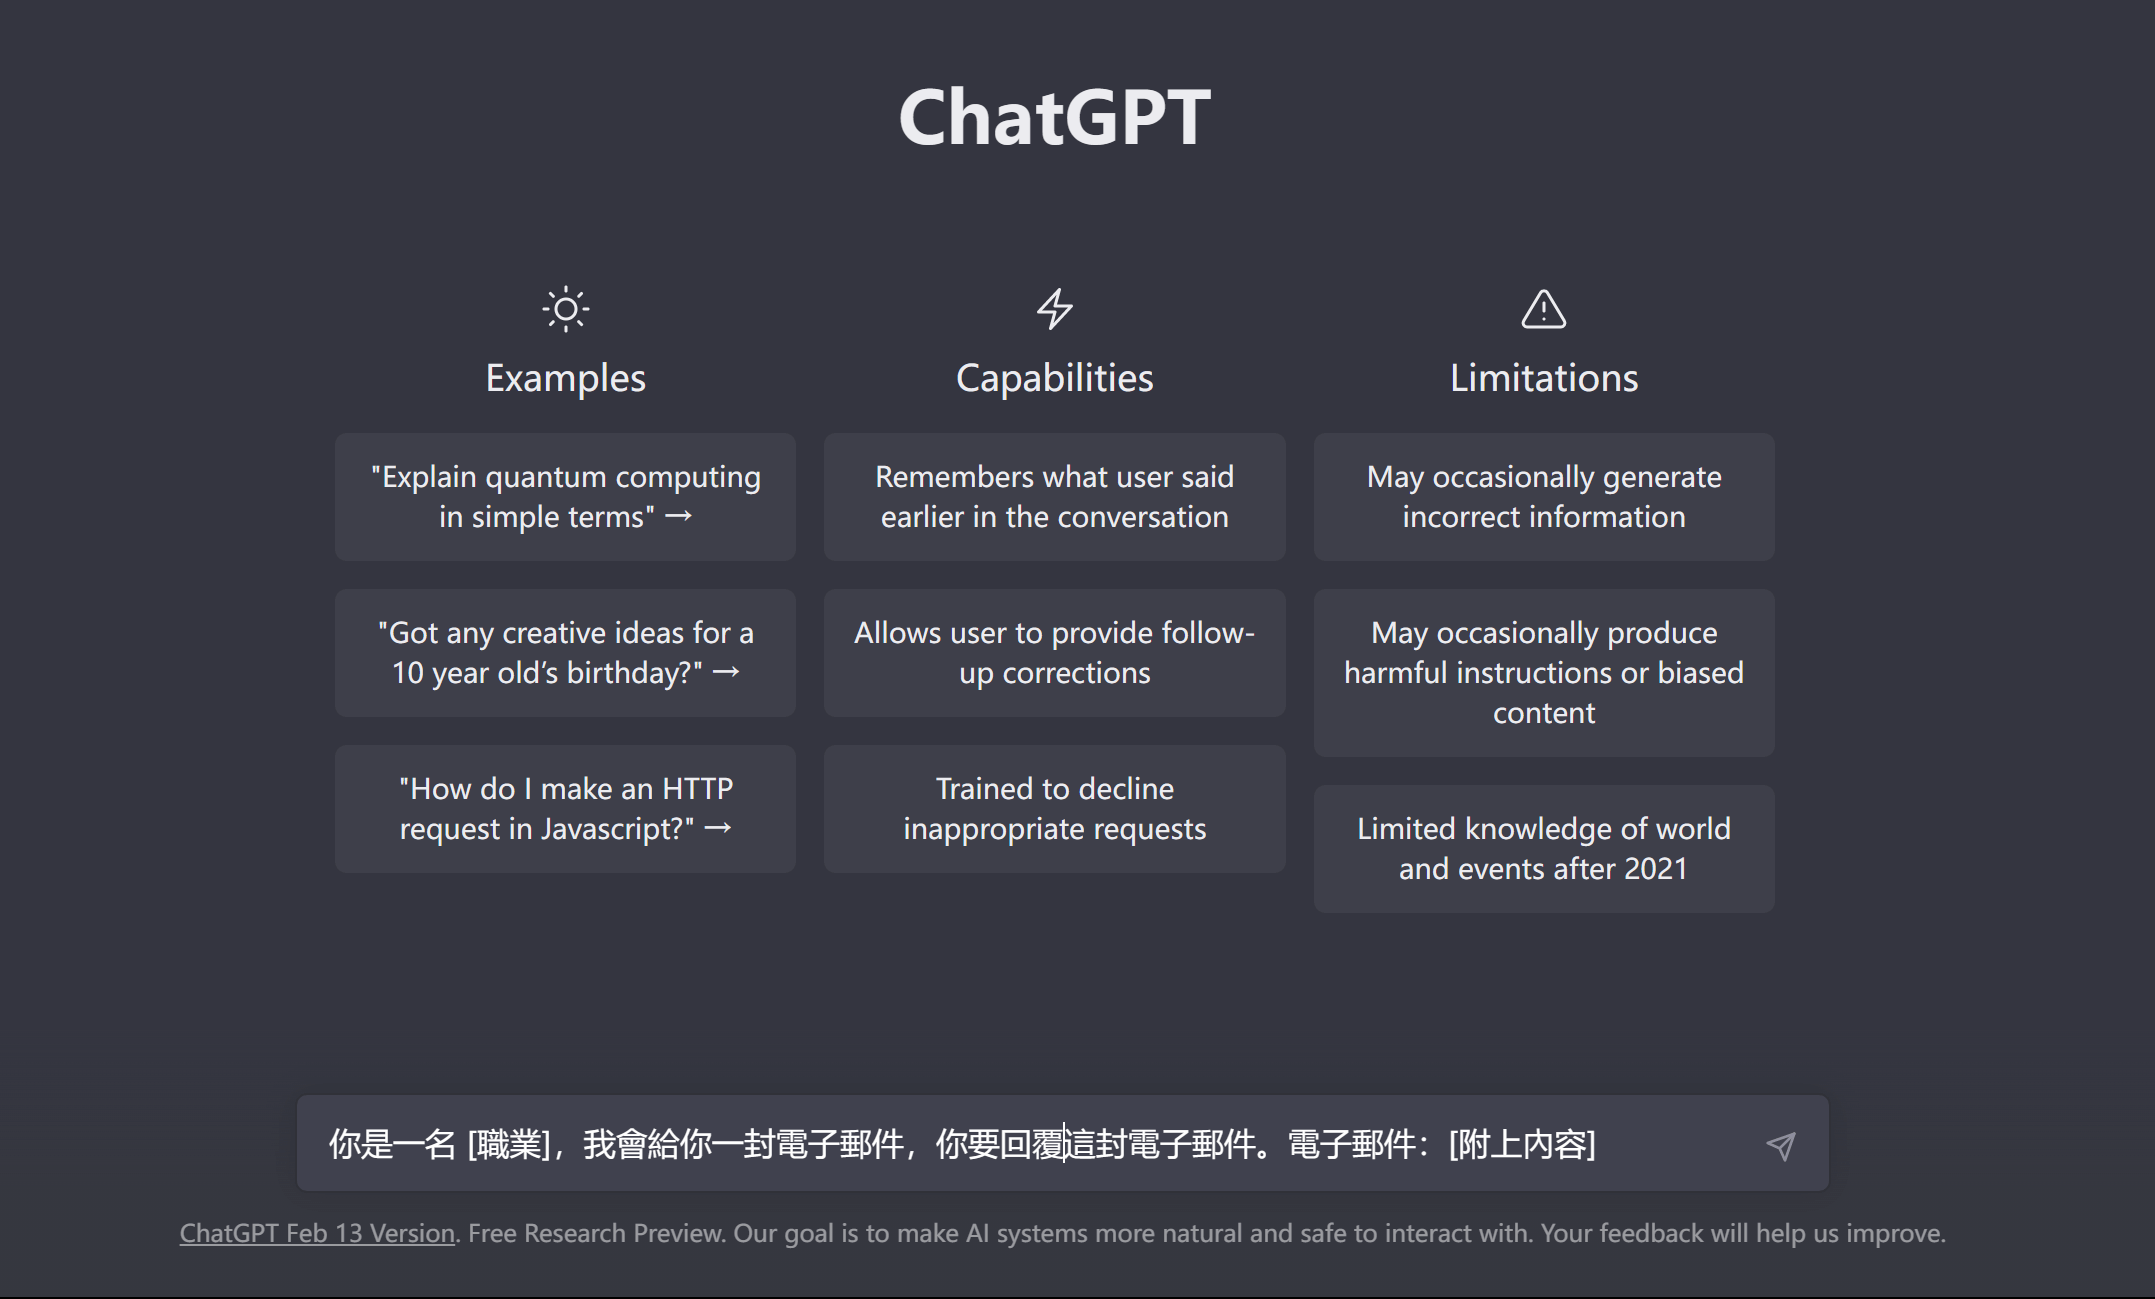 將提示指令複製貼上至 ChatGPT 中